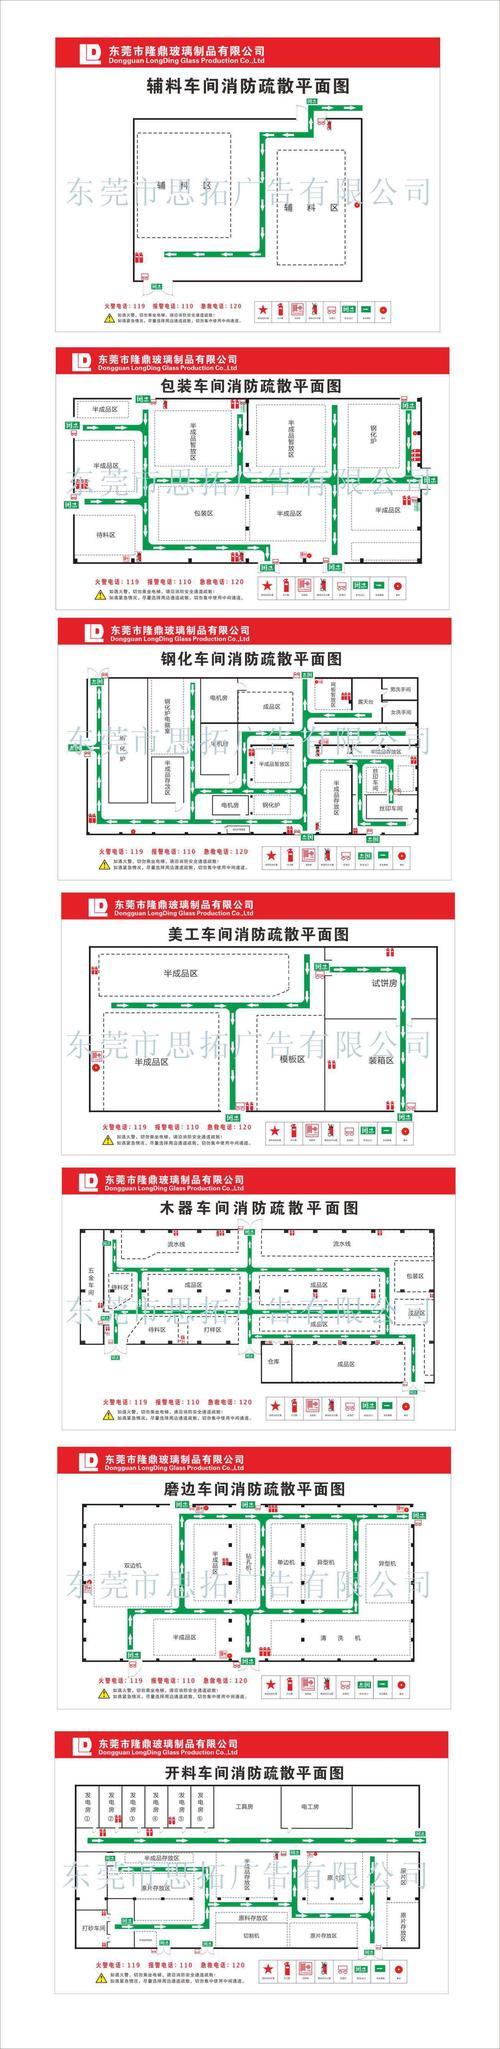 消防疏散平面图设计制作安装_工厂消防设计平面图 东莞广告公司